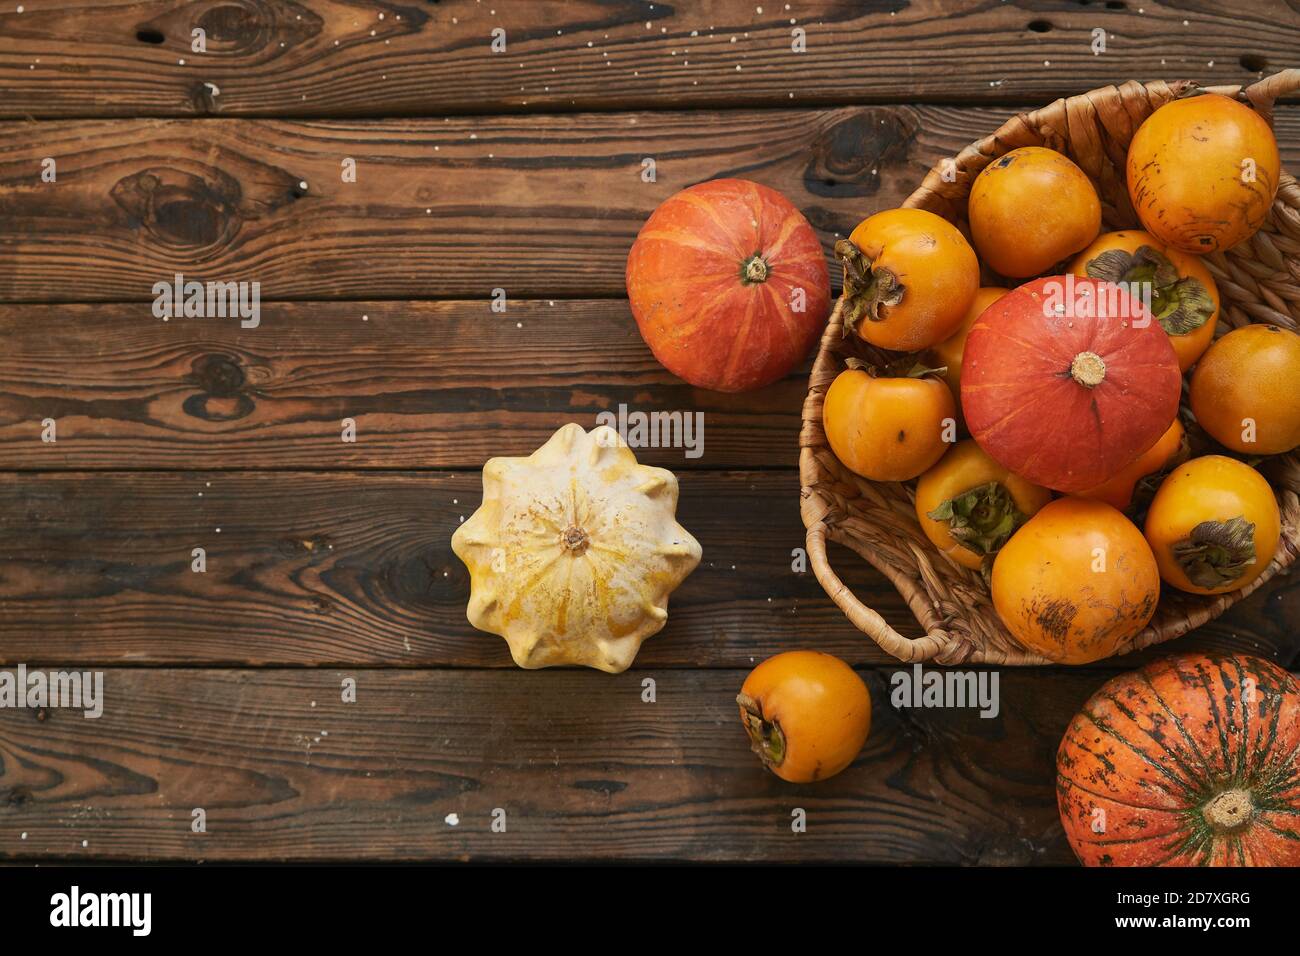 panier avec une récolte de persimmons et de citrouilles sur une table en bois. Style campagnard Banque D'Images